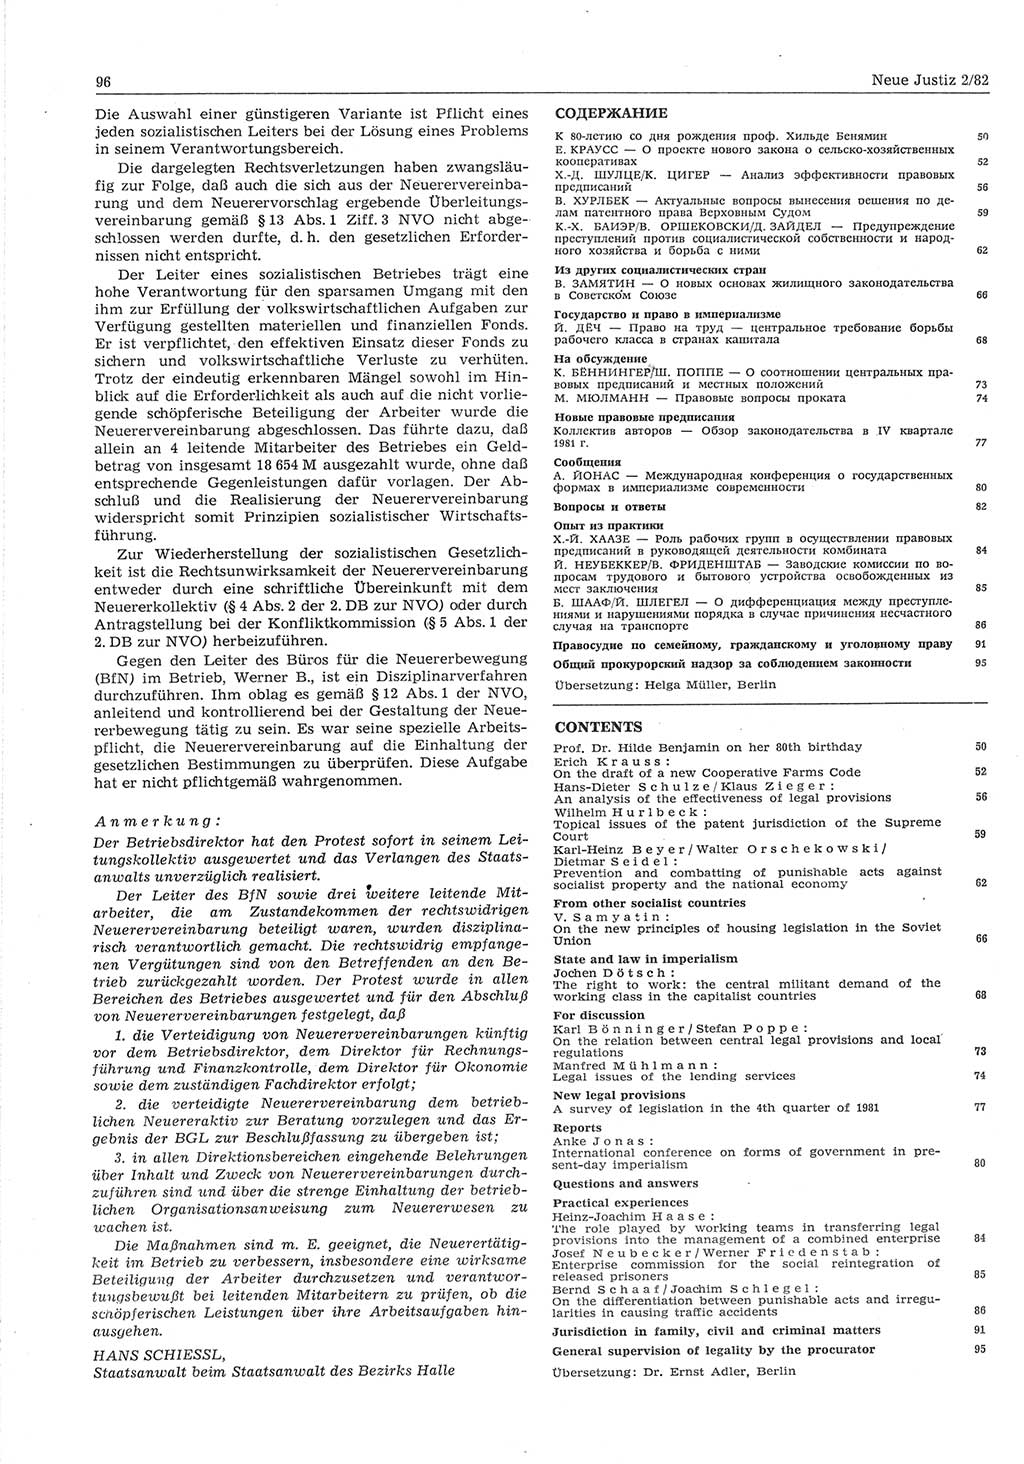 Neue Justiz (NJ), Zeitschrift für sozialistisches Recht und Gesetzlichkeit [Deutsche Demokratische Republik (DDR)], 36. Jahrgang 1982, Seite 96 (NJ DDR 1982, S. 96)